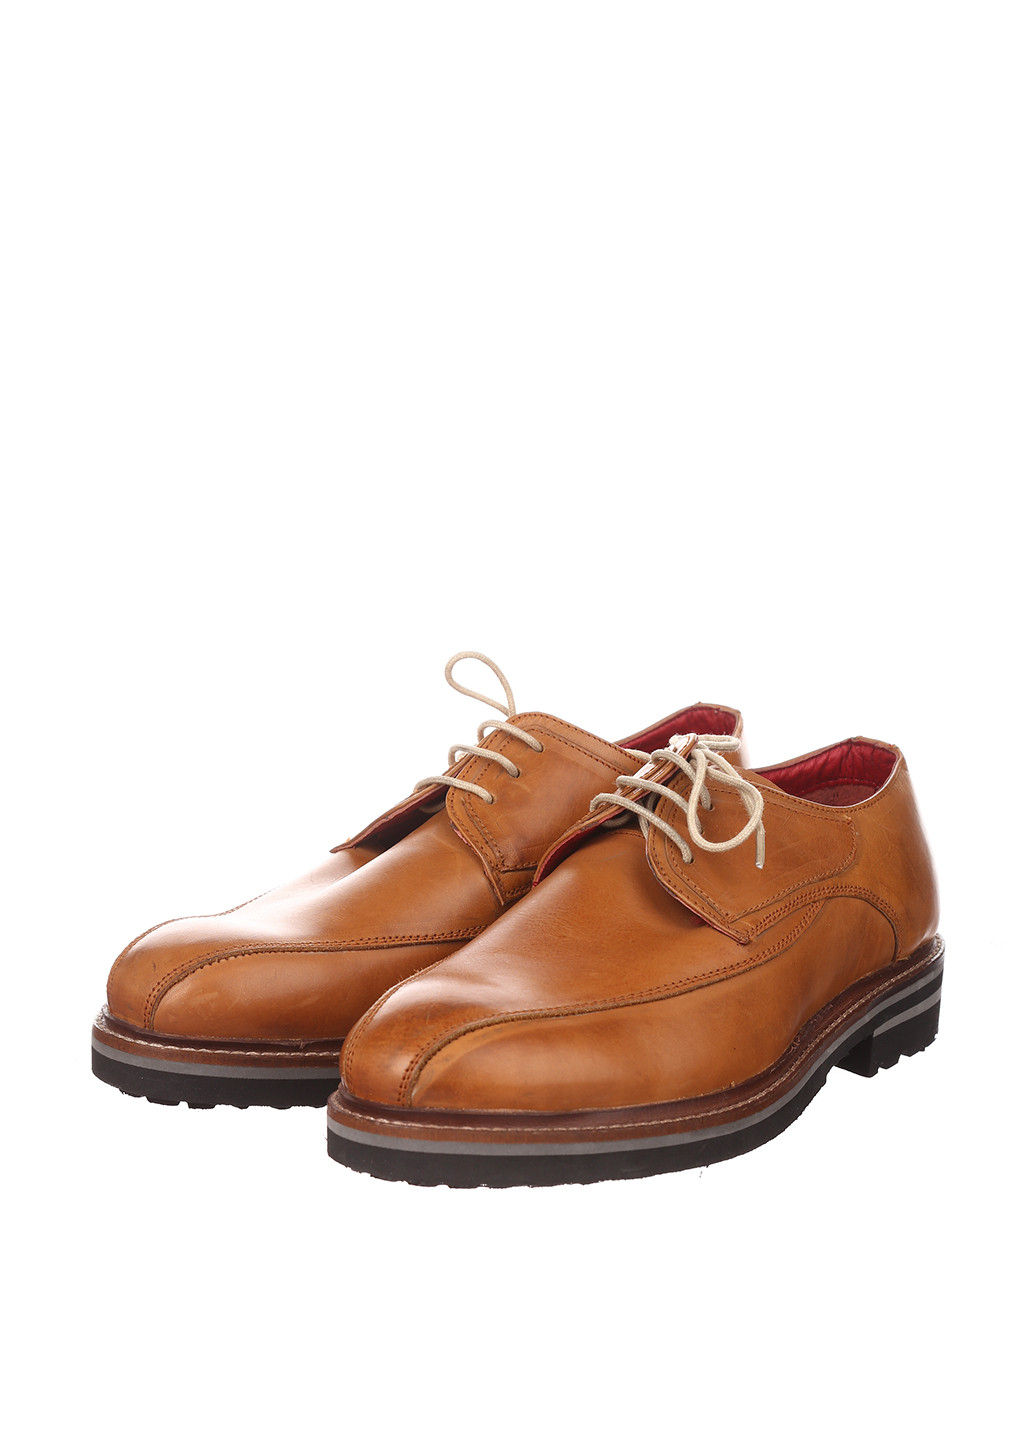 Светло-коричневые кэжуал туфли Alberto Torresi на шнурках